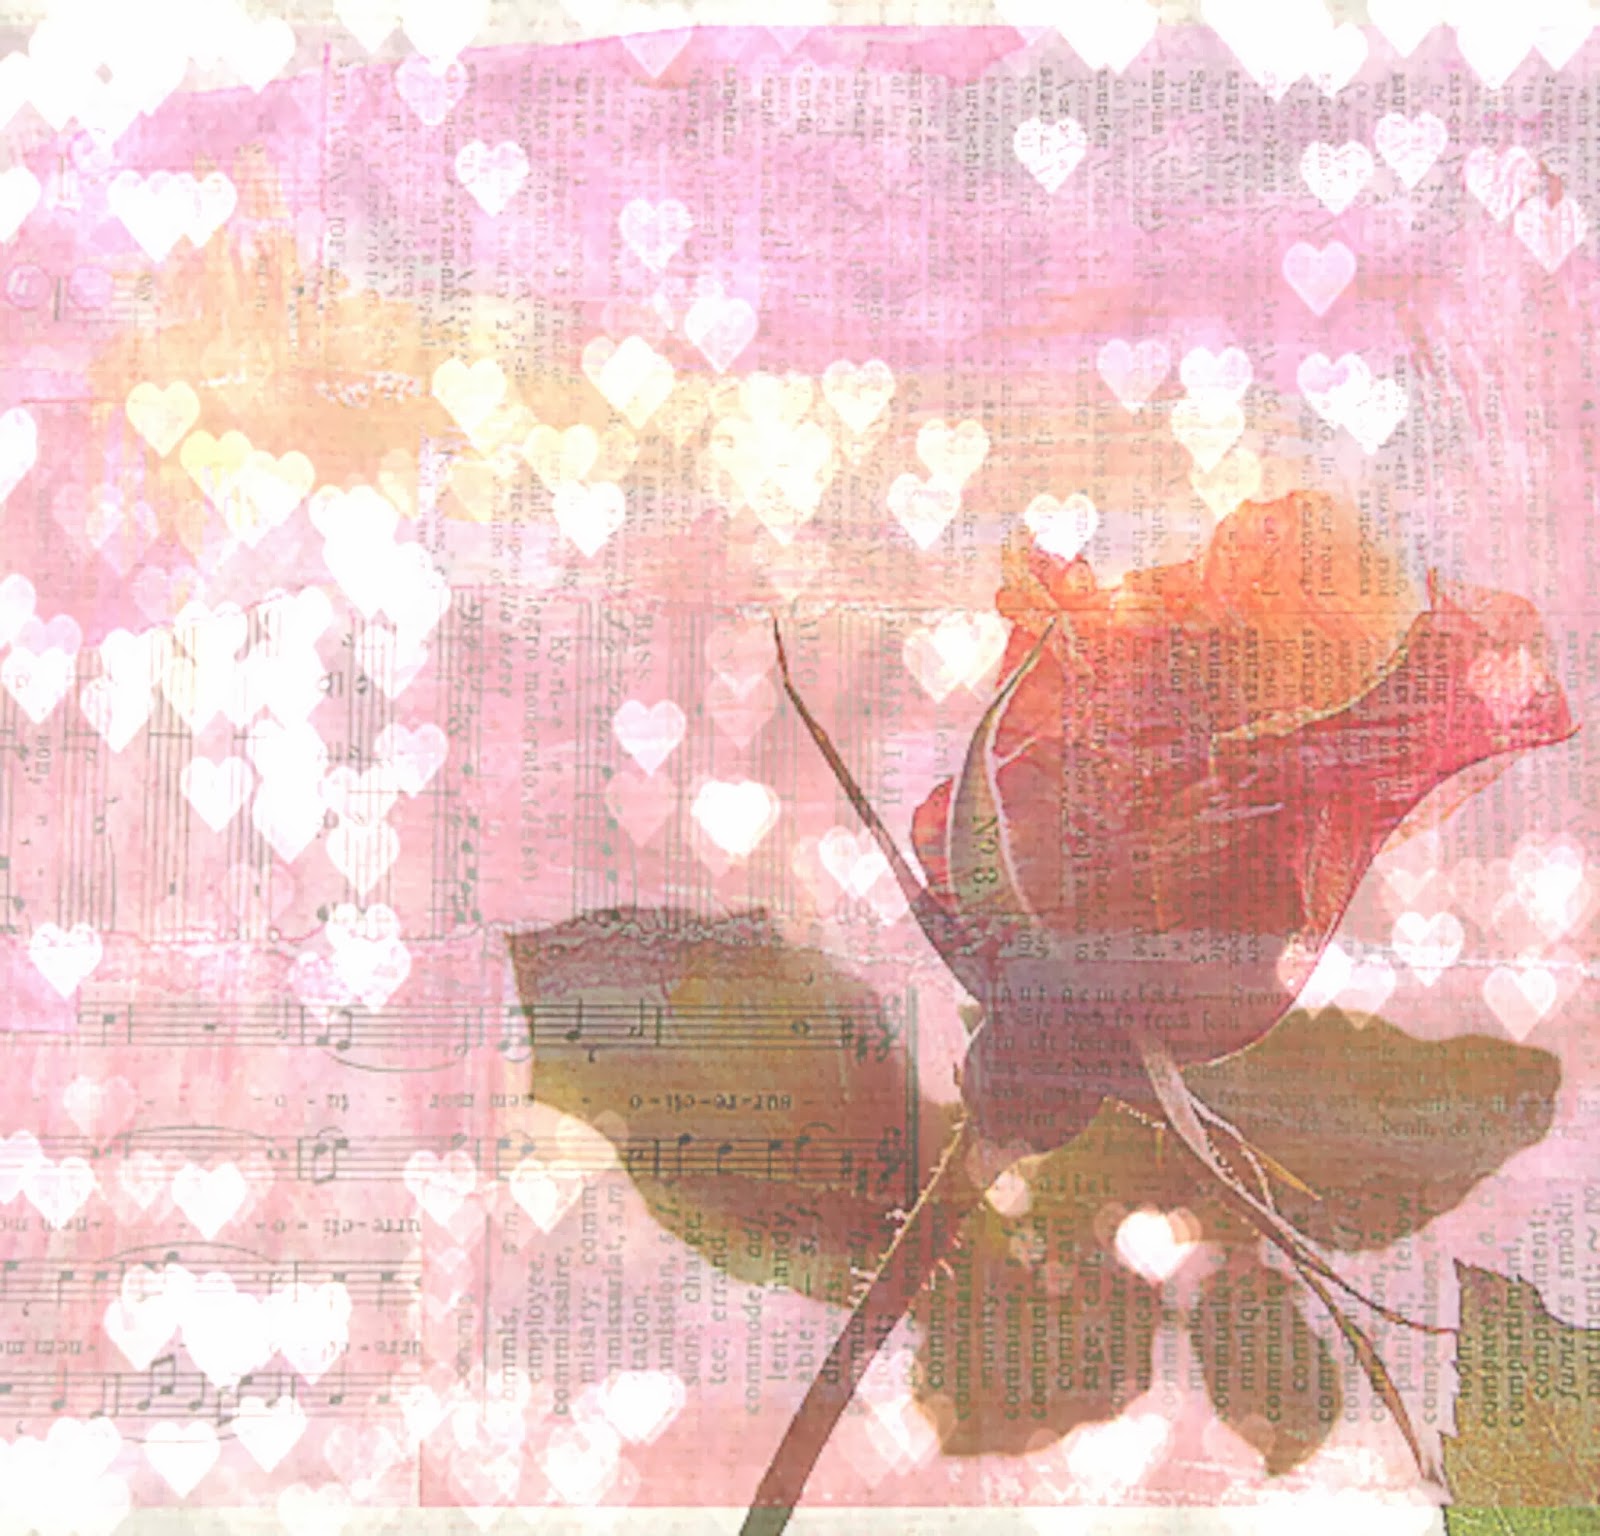 https://www.etsy.com/listing/175537801/love-flower-photograph-vintage-pink?ref=listing-shop-header-4